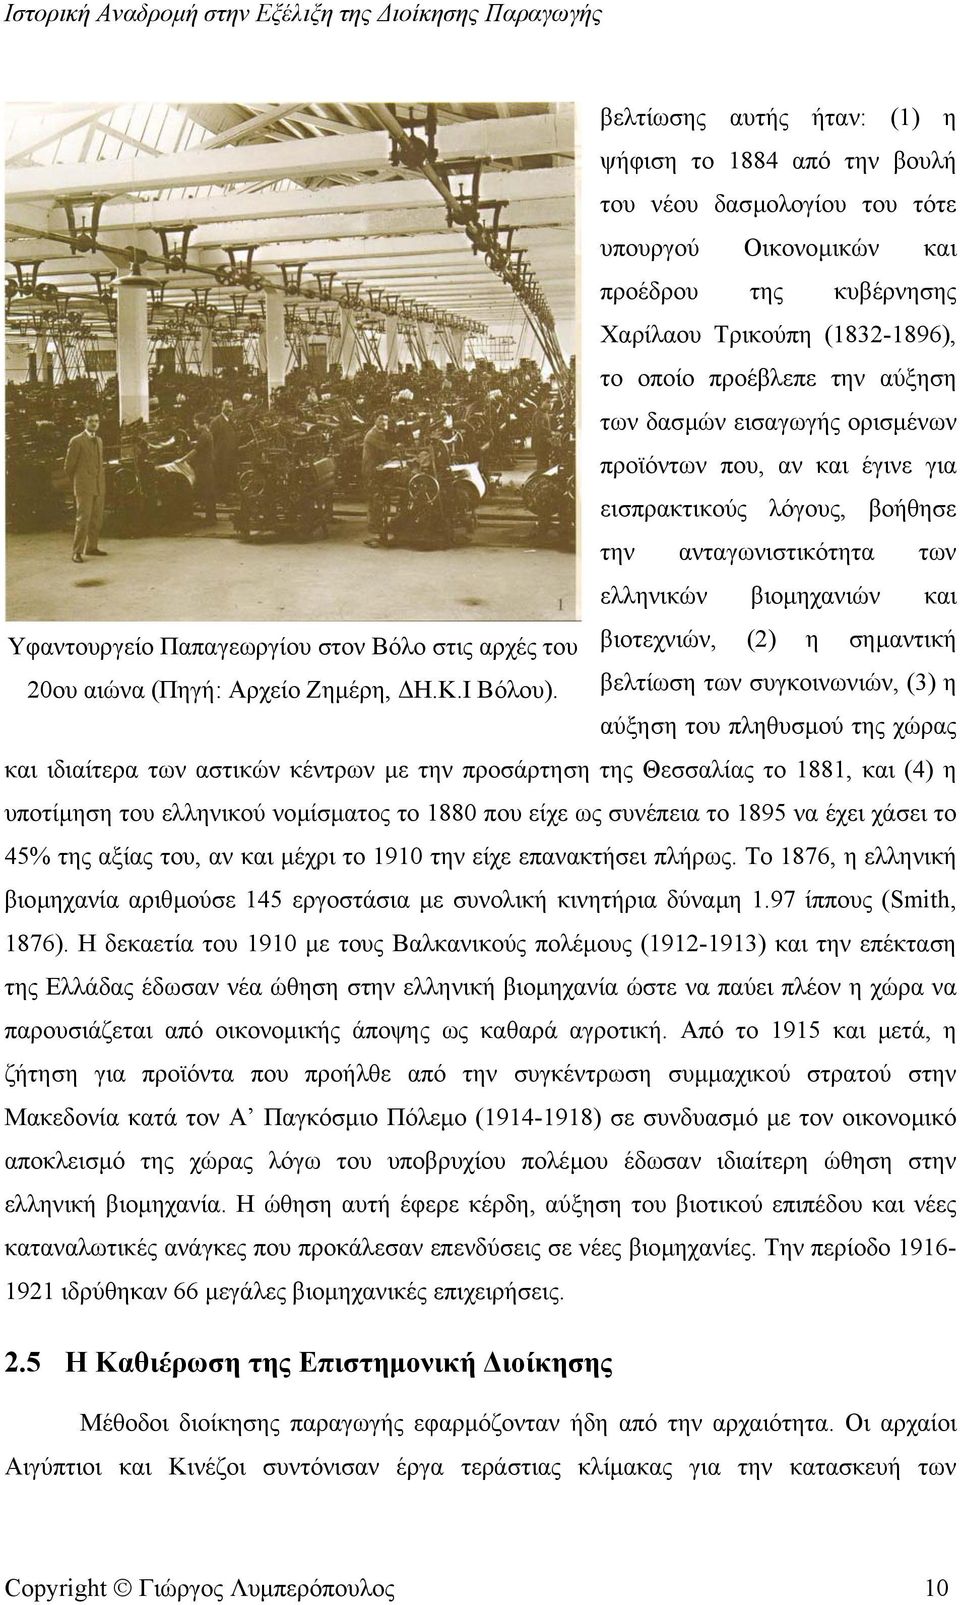 βιοτεχνιών, (2) η σηµαντική 20ου αιώνα (Πηγή: Αρχείο Ζηµέρη, Η.Κ.Ι Βόλου).